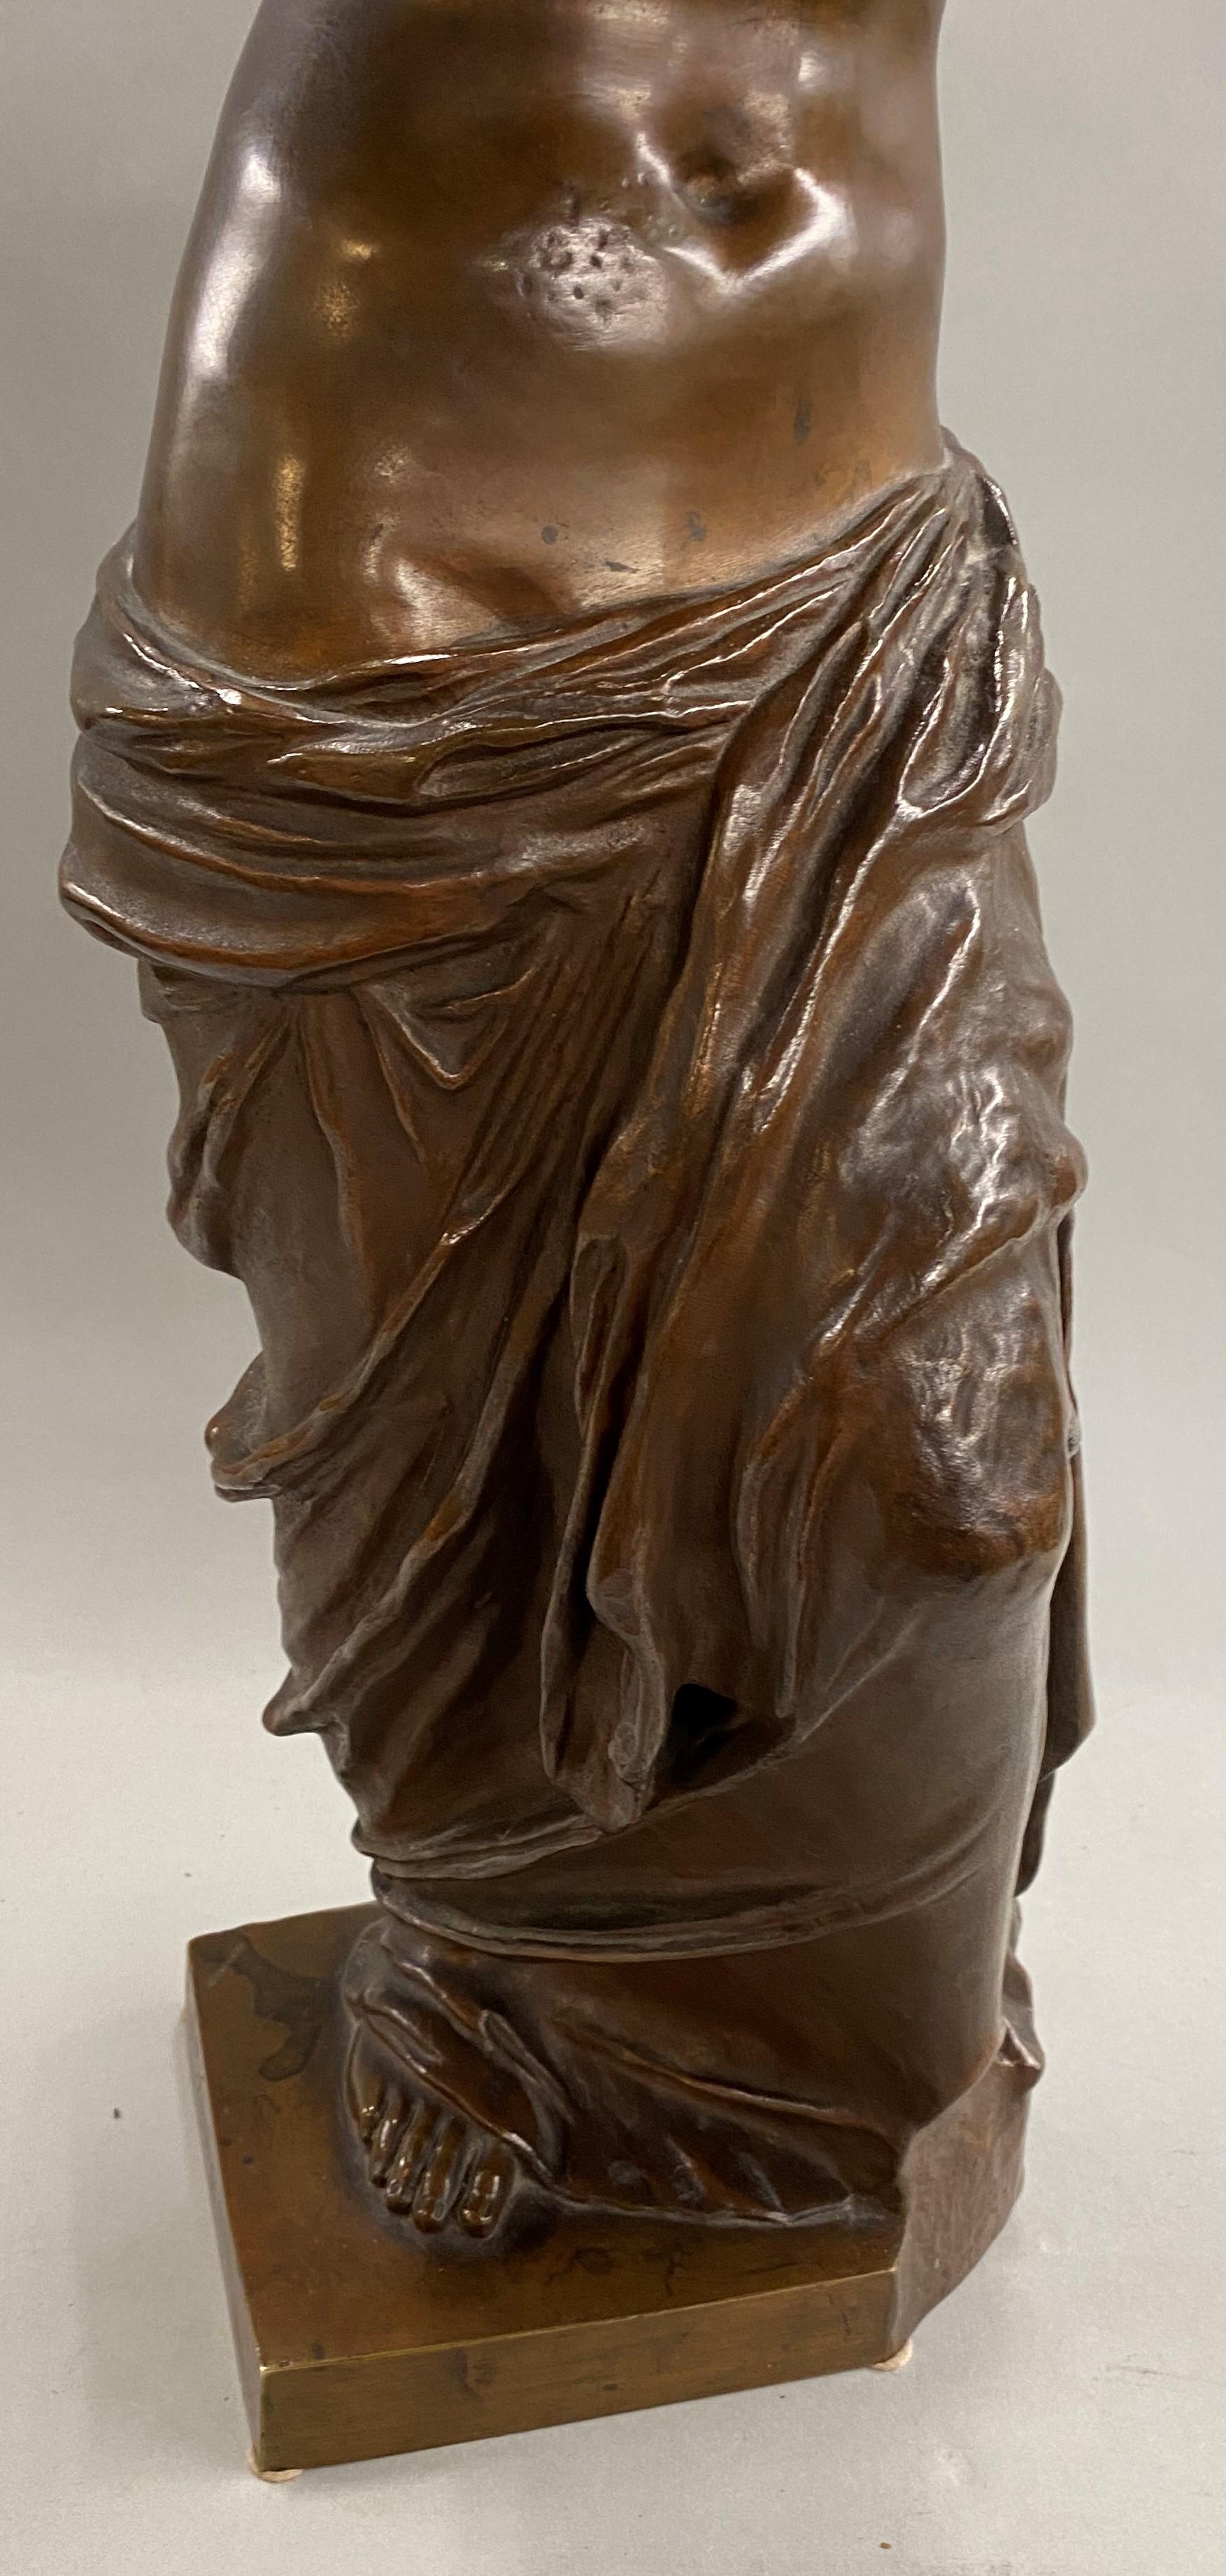 Venus de Milo - Realist Sculpture by Ron Liod Sauvage